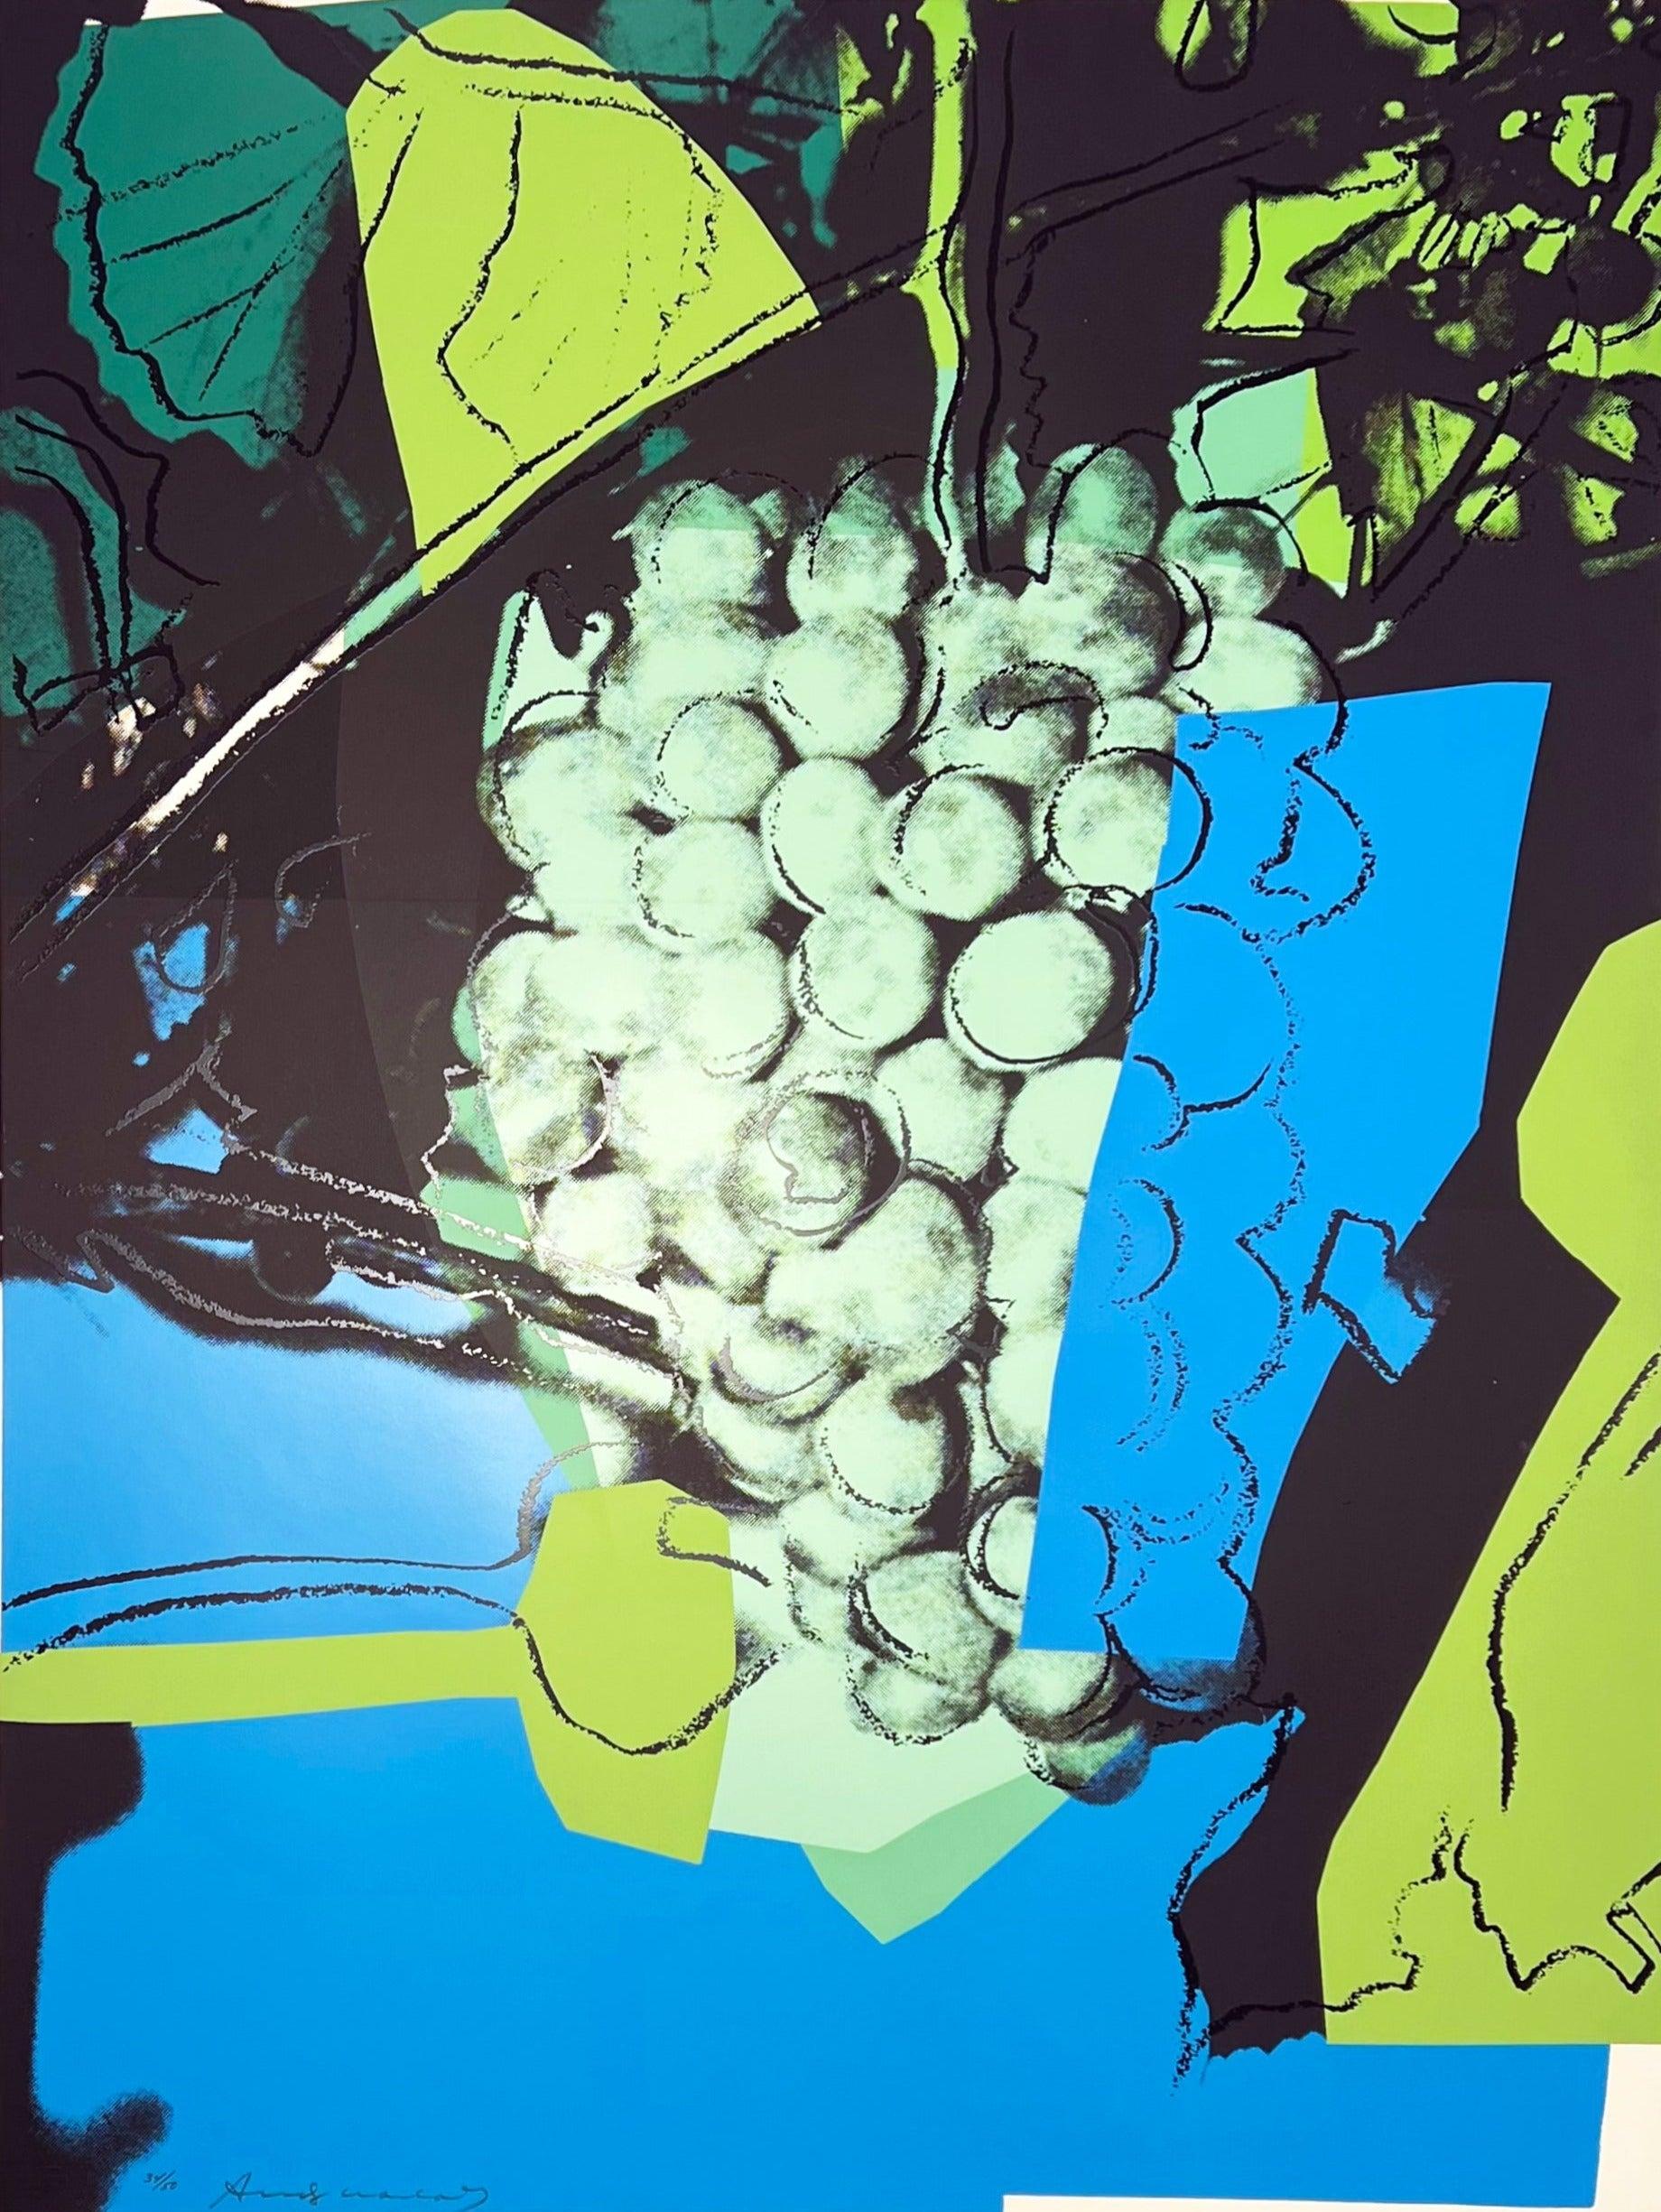 Artiste : Andy Warhol
Titre : Raisins
Portefeuille : Raisins
Support : Sérigraphie sur papier bristol Strathmore
Date : 1979
Edition : 34/50
Taille du drap : 40" x 30"
Signature : Signé à la main au feutre
Référence : Feldman II.193